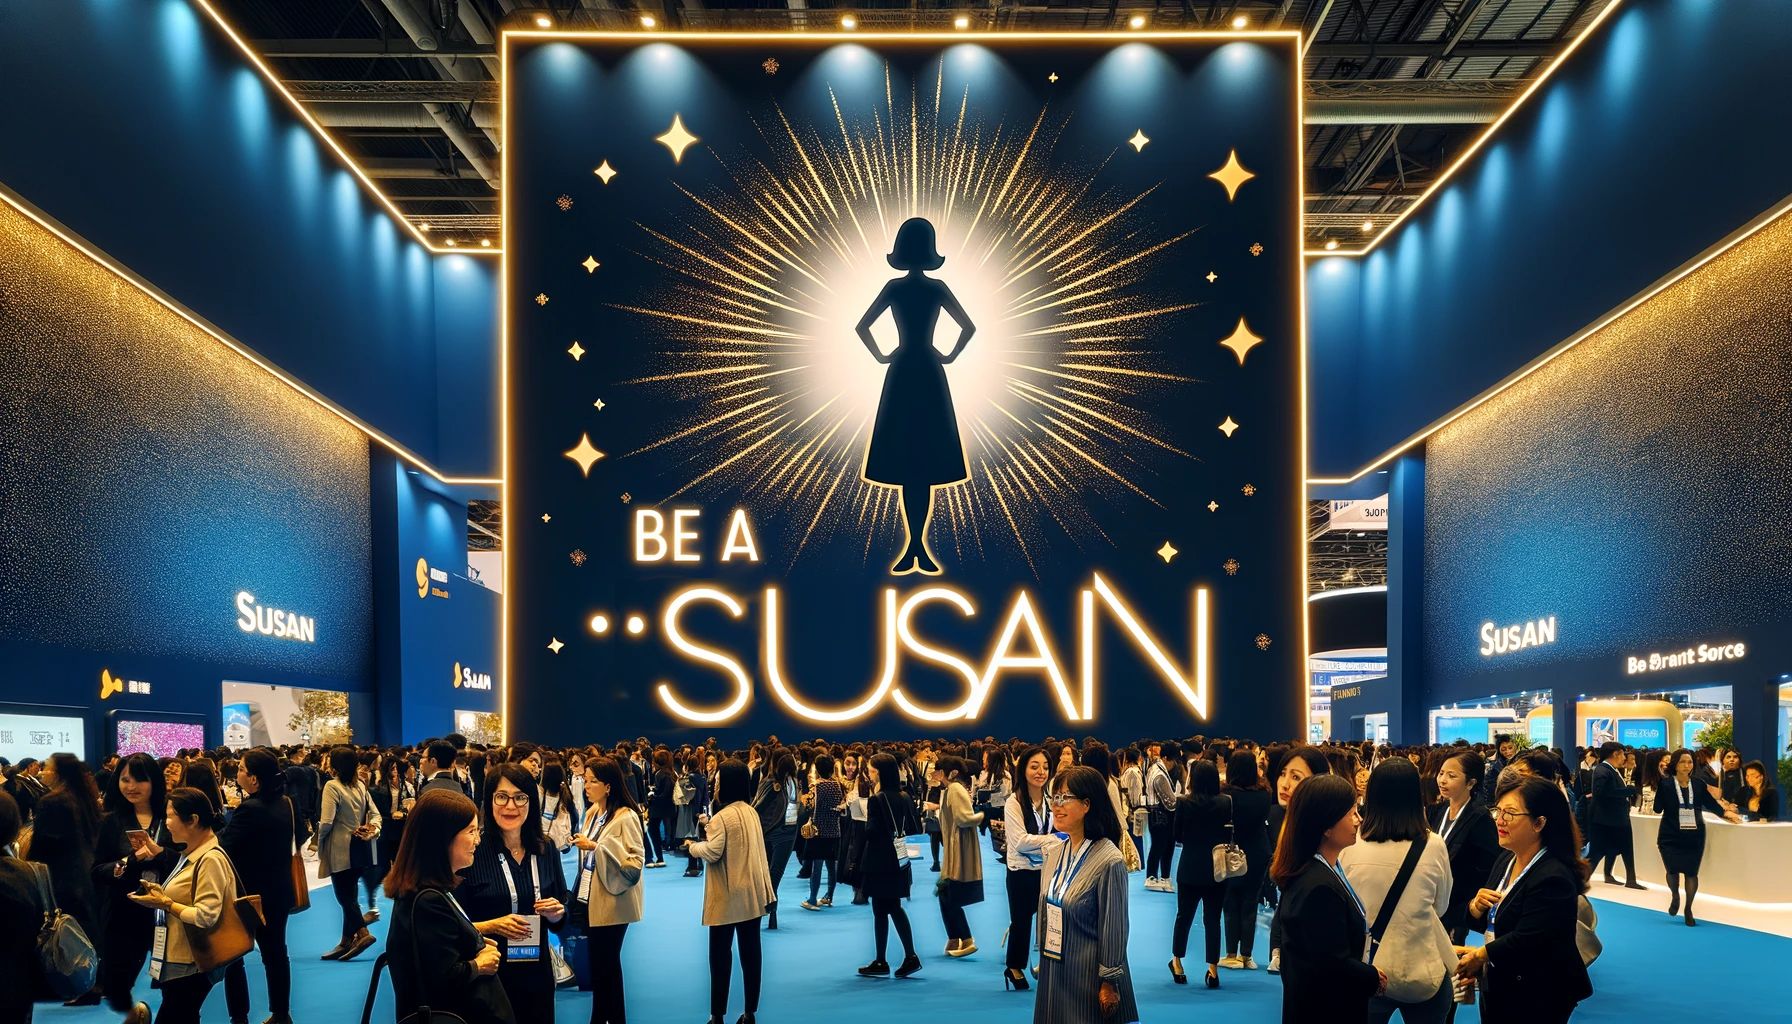 Be a Susan!